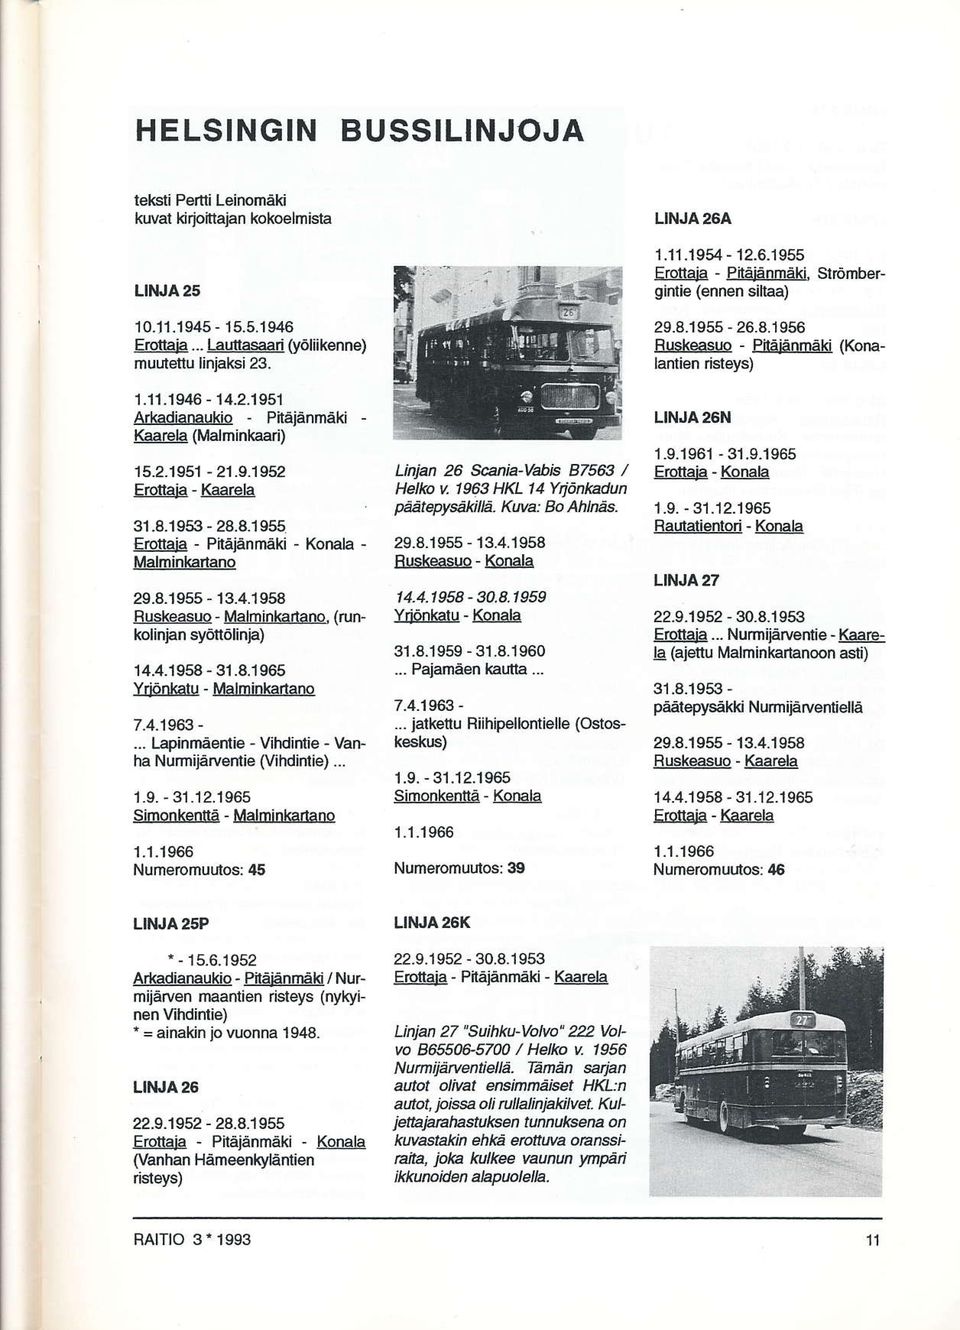 4.1963 -... Lapinmäentie - Vihdintie - Vanha Nurnijärventie (Vihdintie)... 1.S. - 31.12.1965 Simonkenttä - Malminkarlano 1.1.1966 Numeromuutos: 45 LAan 26 Scania-Vabis 87563 / Helko u 1963 HKL 14 Ytiönkdun pååterysåkilä.